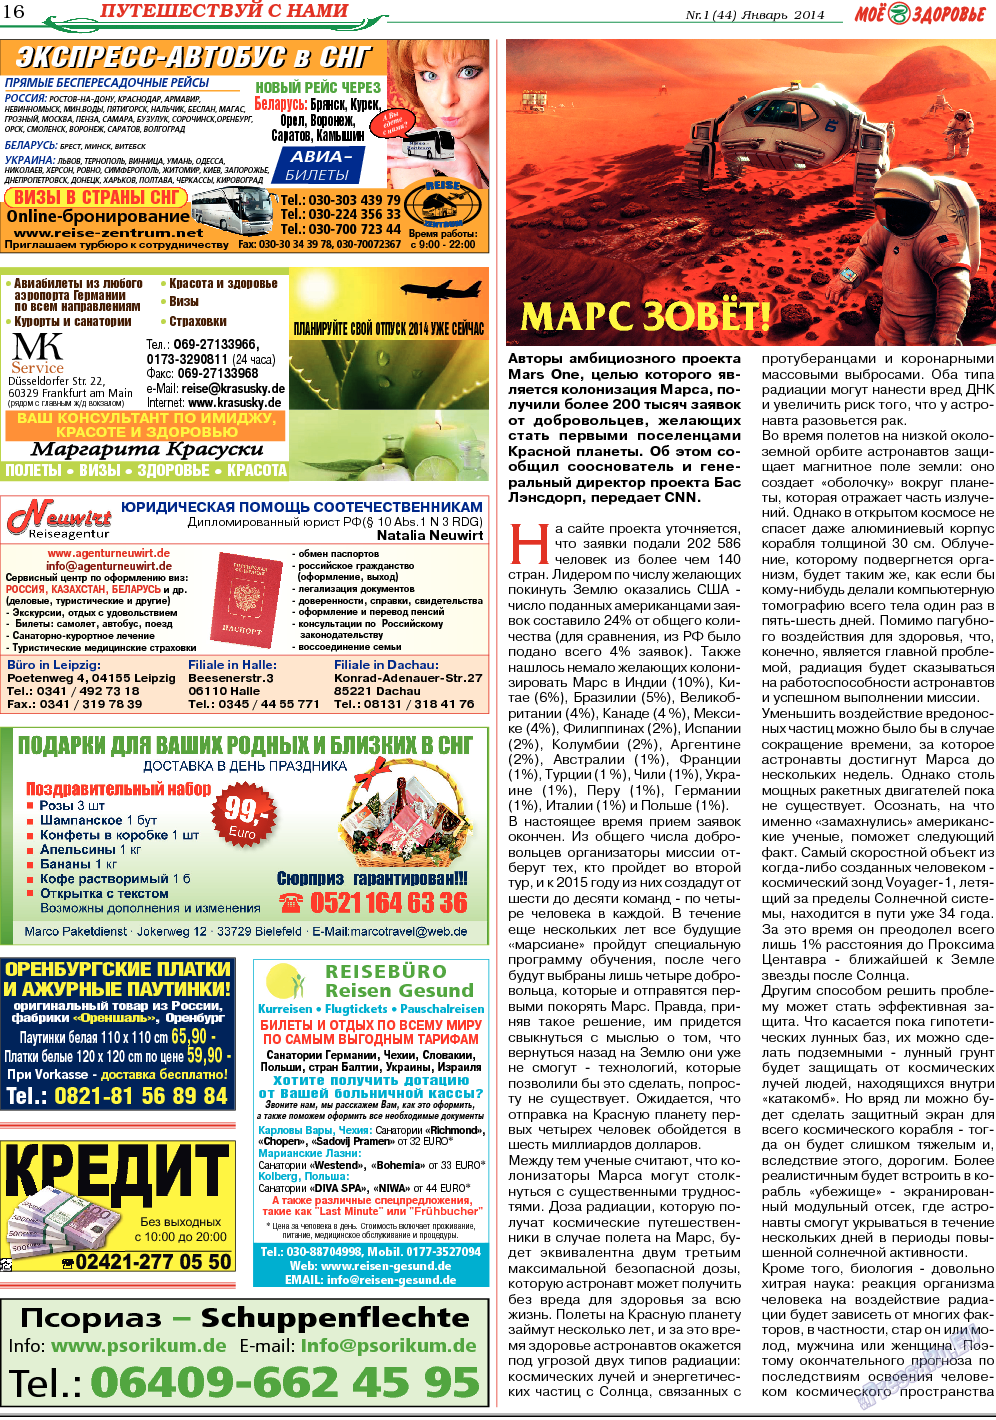 Кругозор, газета. 2014 №1 стр.16